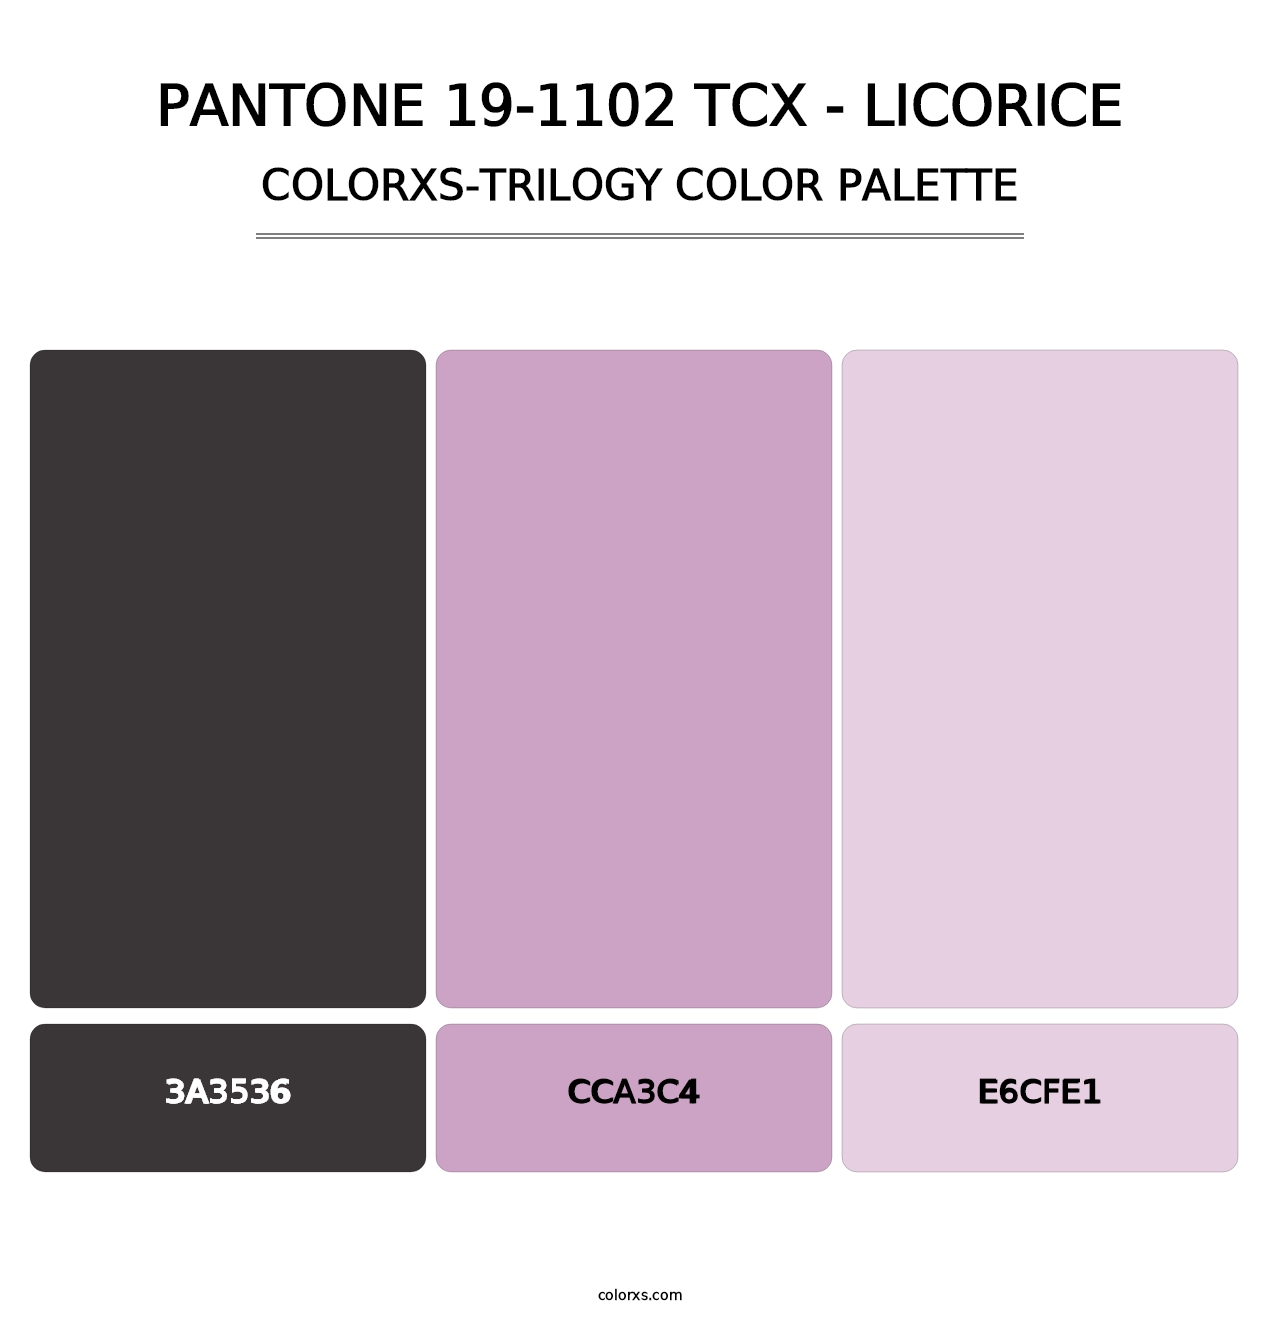 PANTONE 19-1102 TCX - Licorice - Colorxs Trilogy Palette